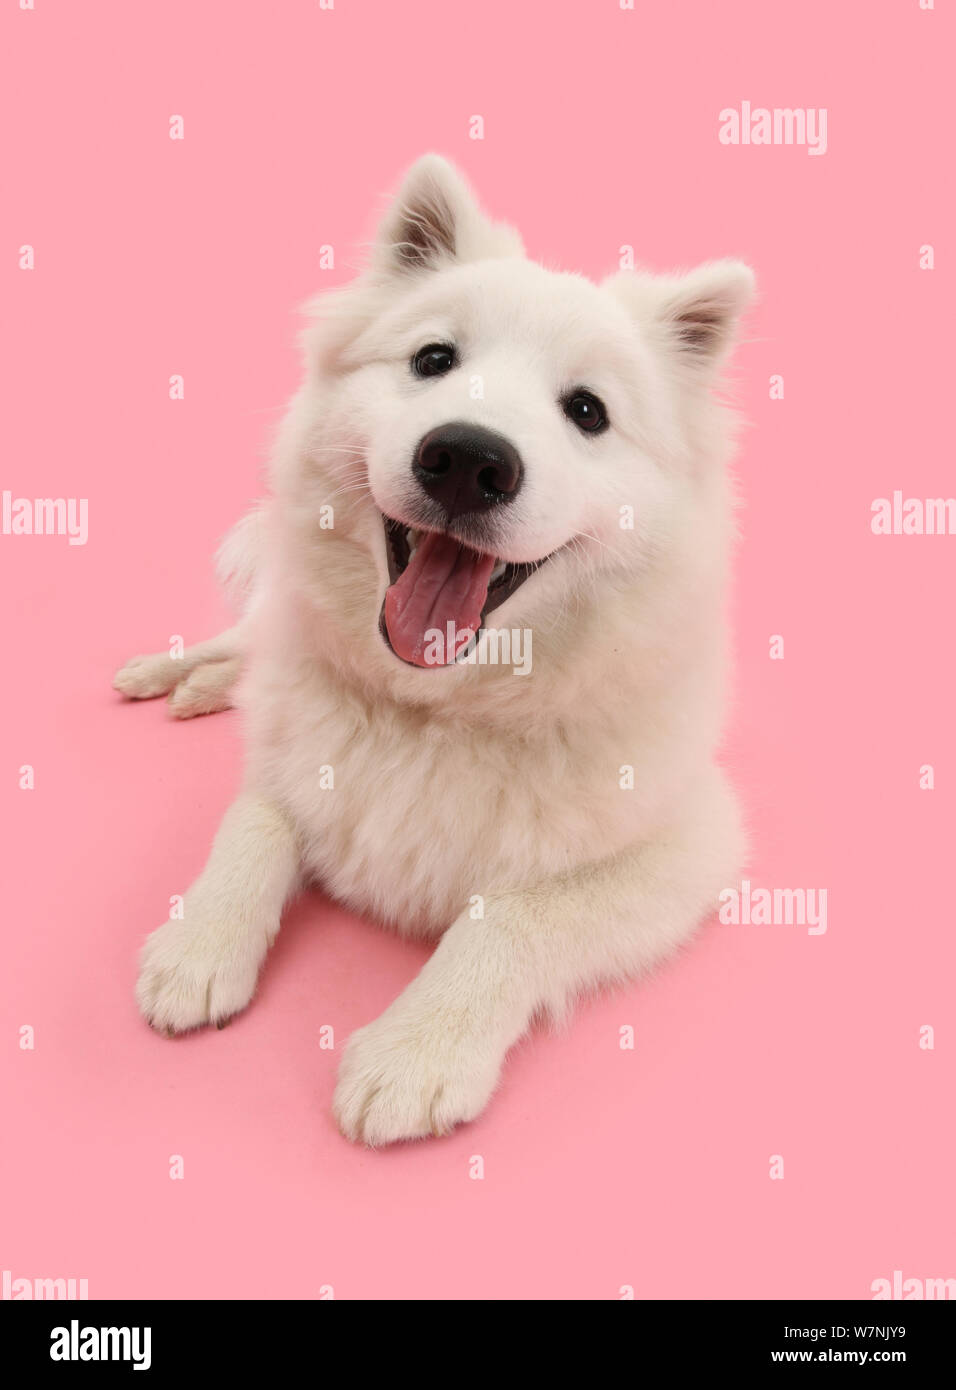 White Japanese Spitz dog, Sushi, 6 months, on pink background. Stock Photo